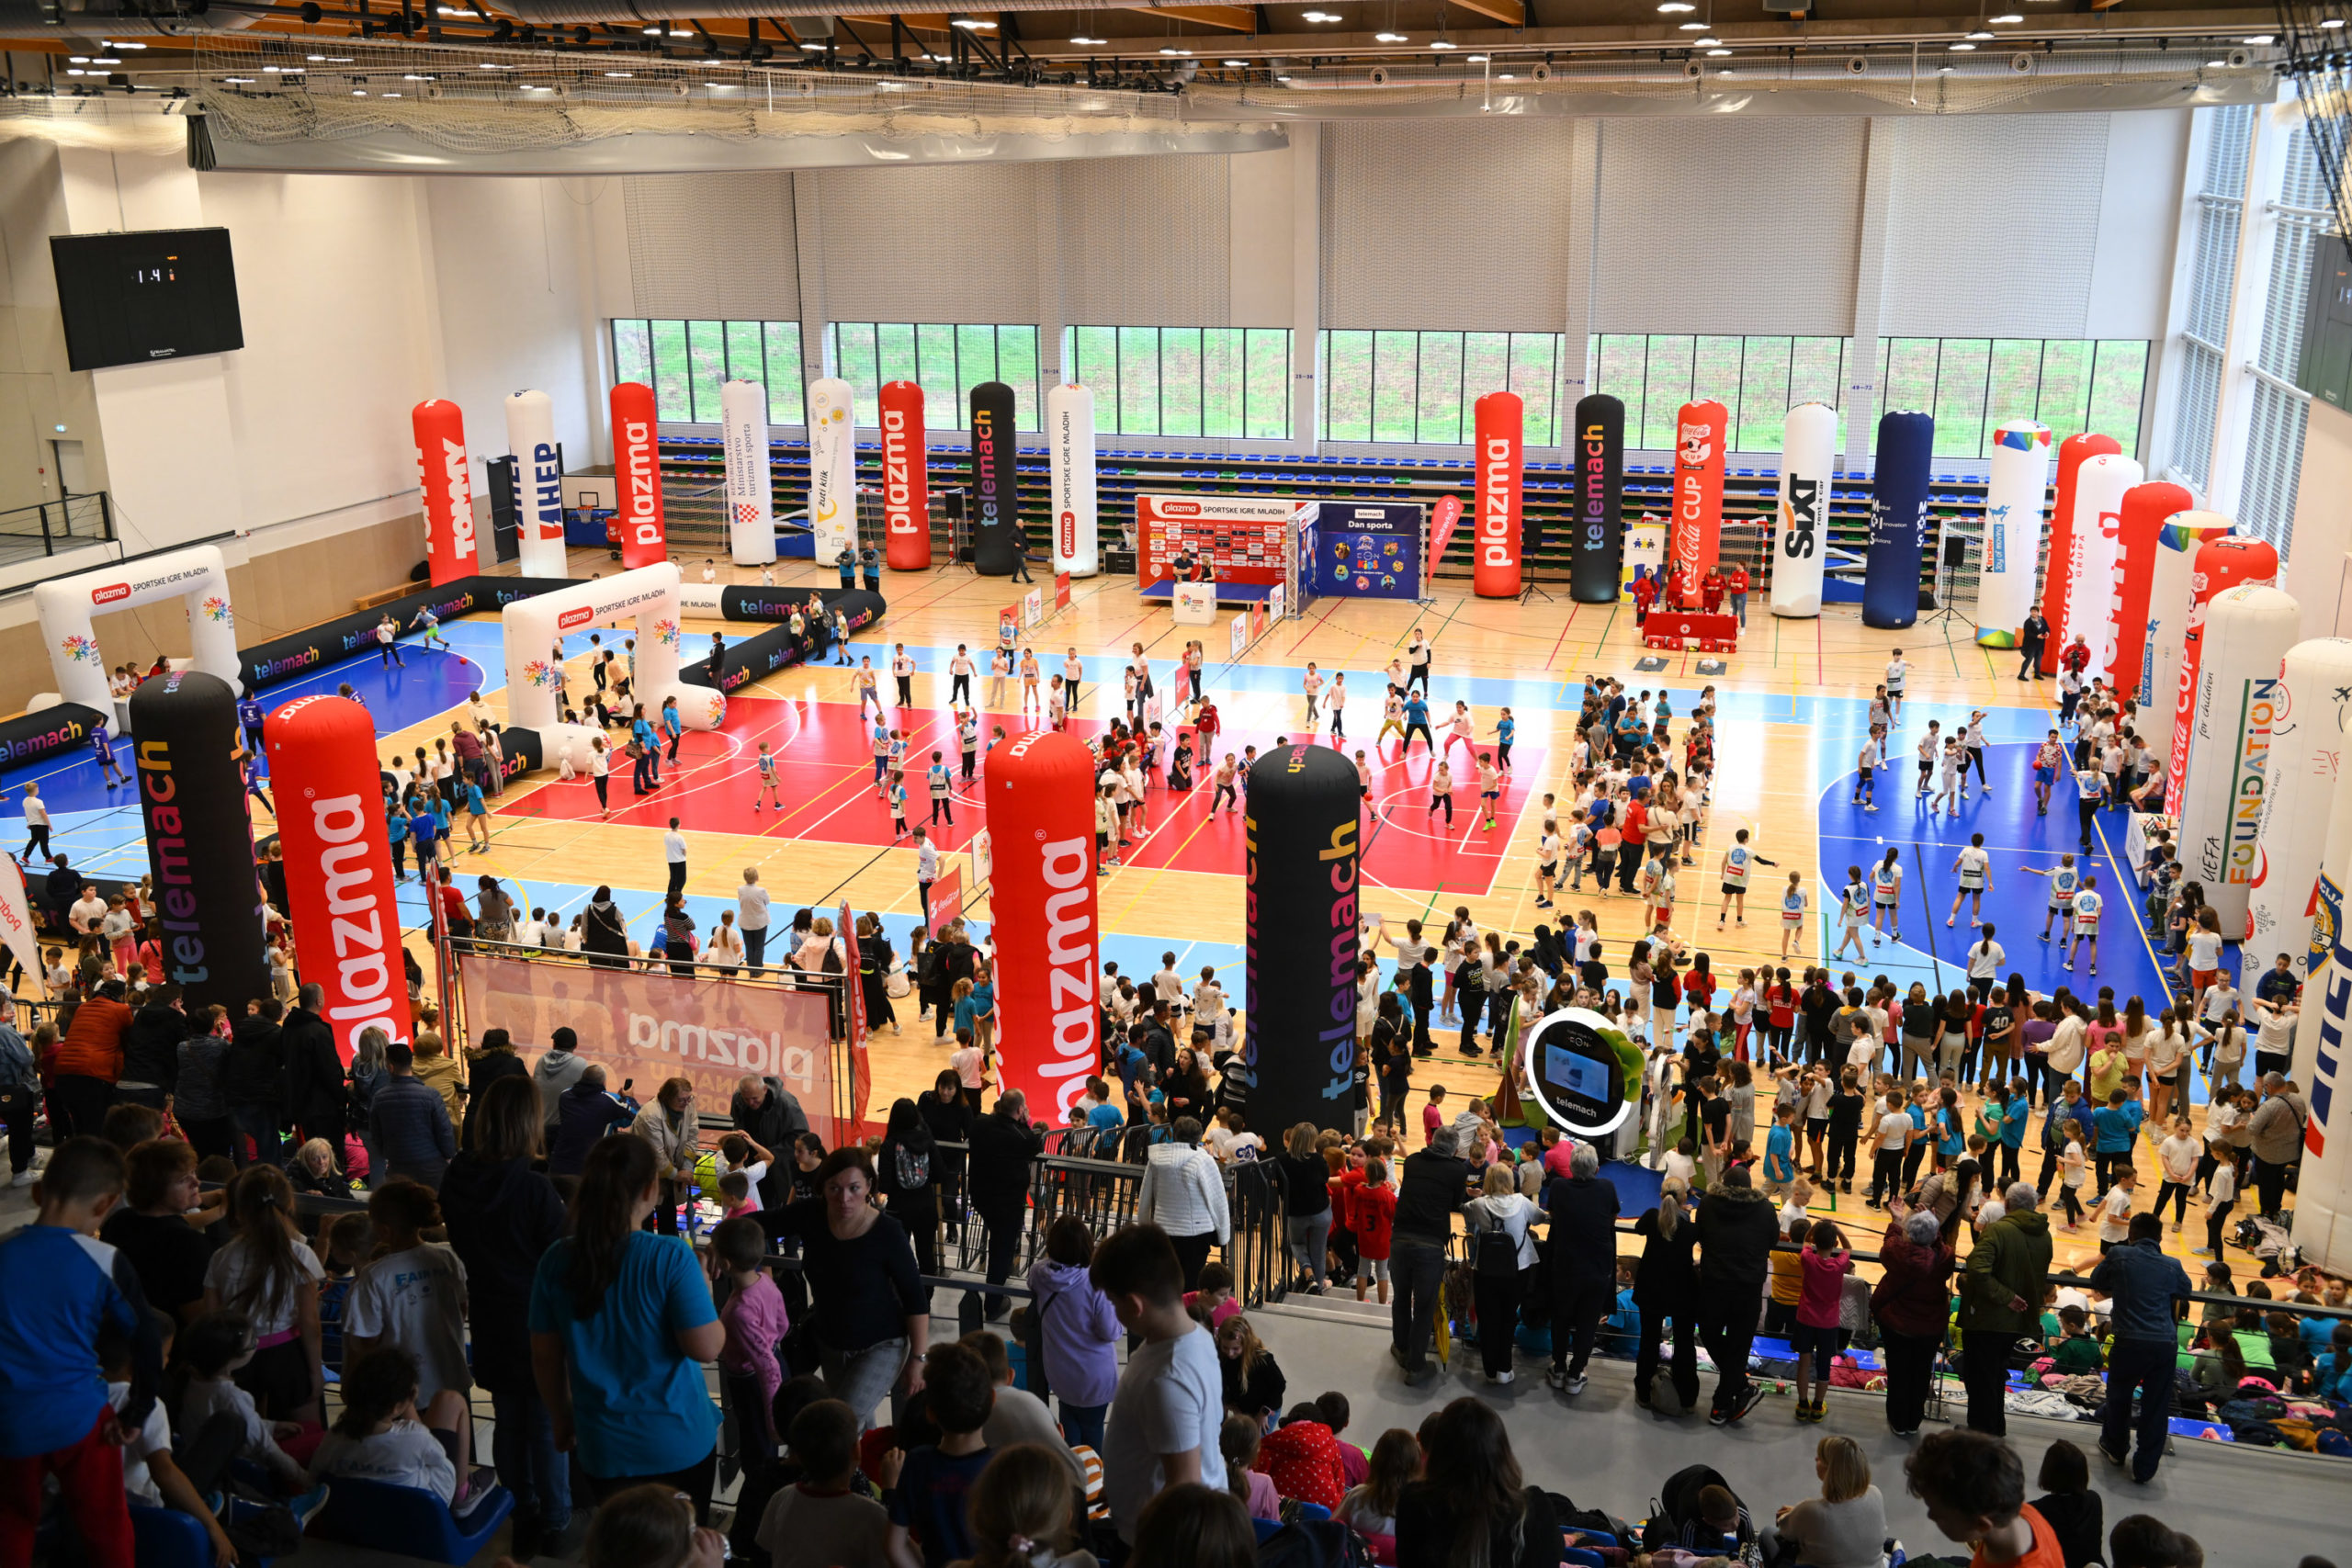 Telemach Dan sporta započeo veliku turneju u Sisku